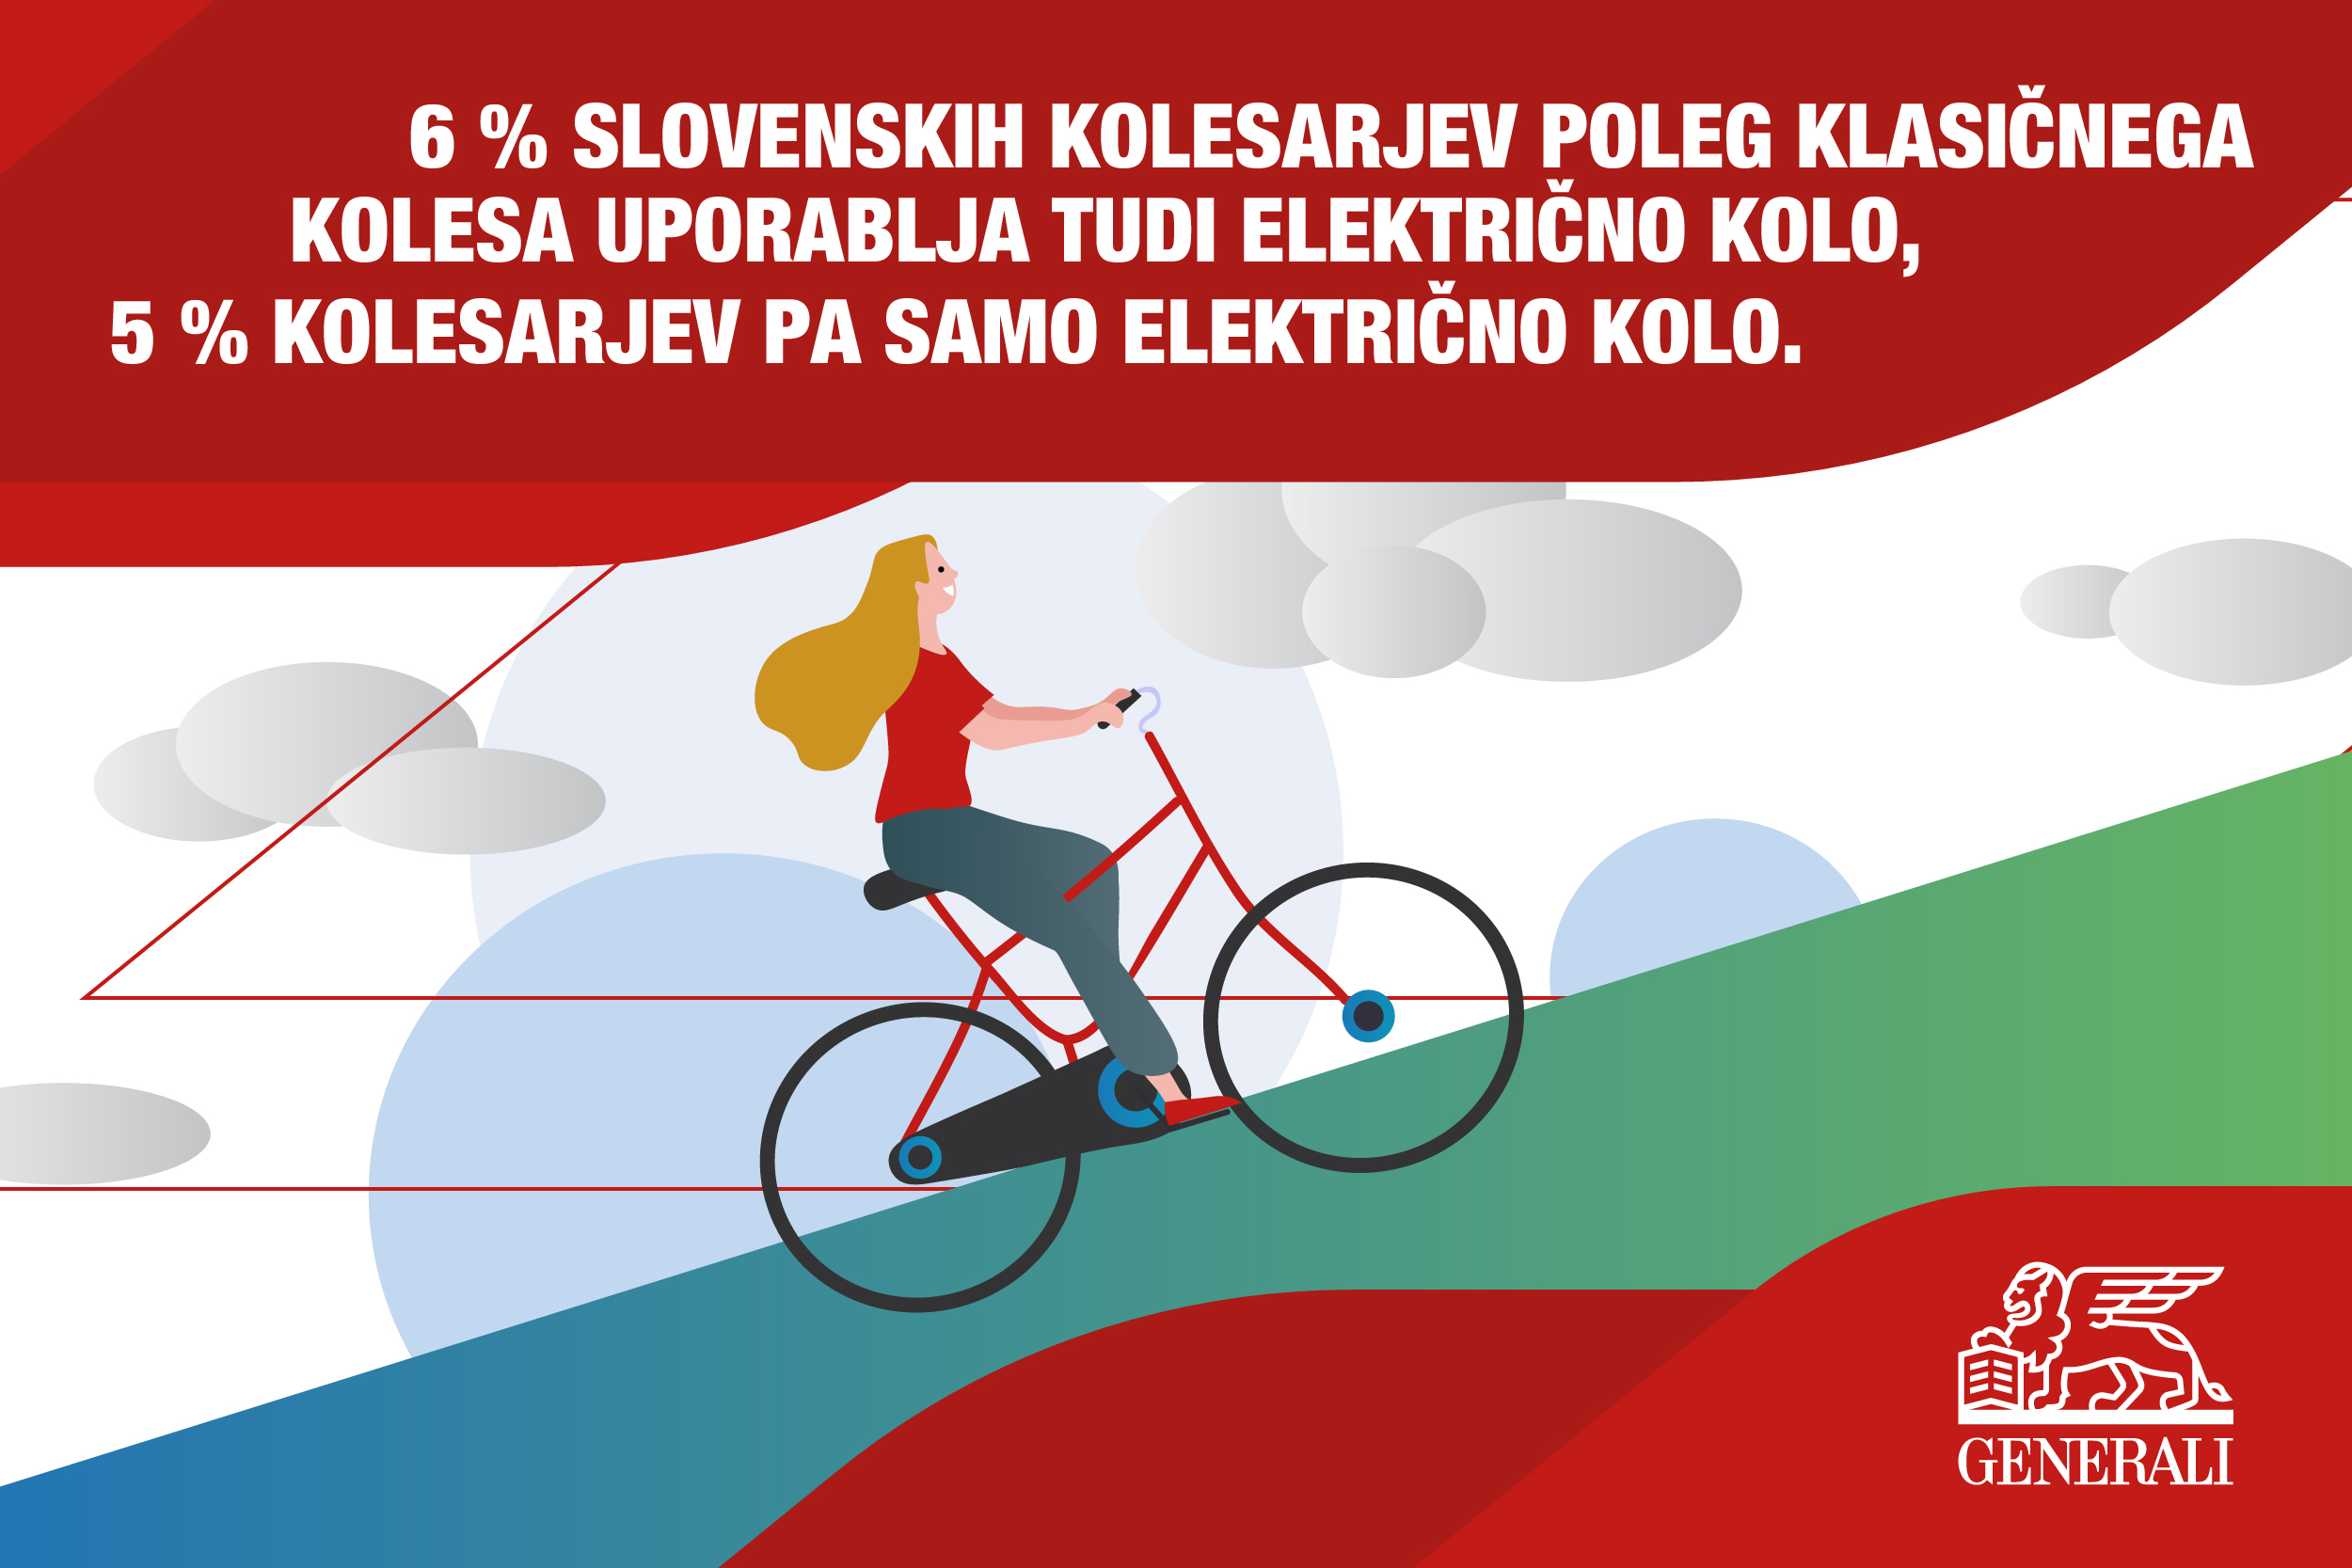 6 % slovenskih kolesarjev poleg klasičnega kolesa uporablja tudi električno kolo, 5 % kolesarjev pa samo električno kolo.